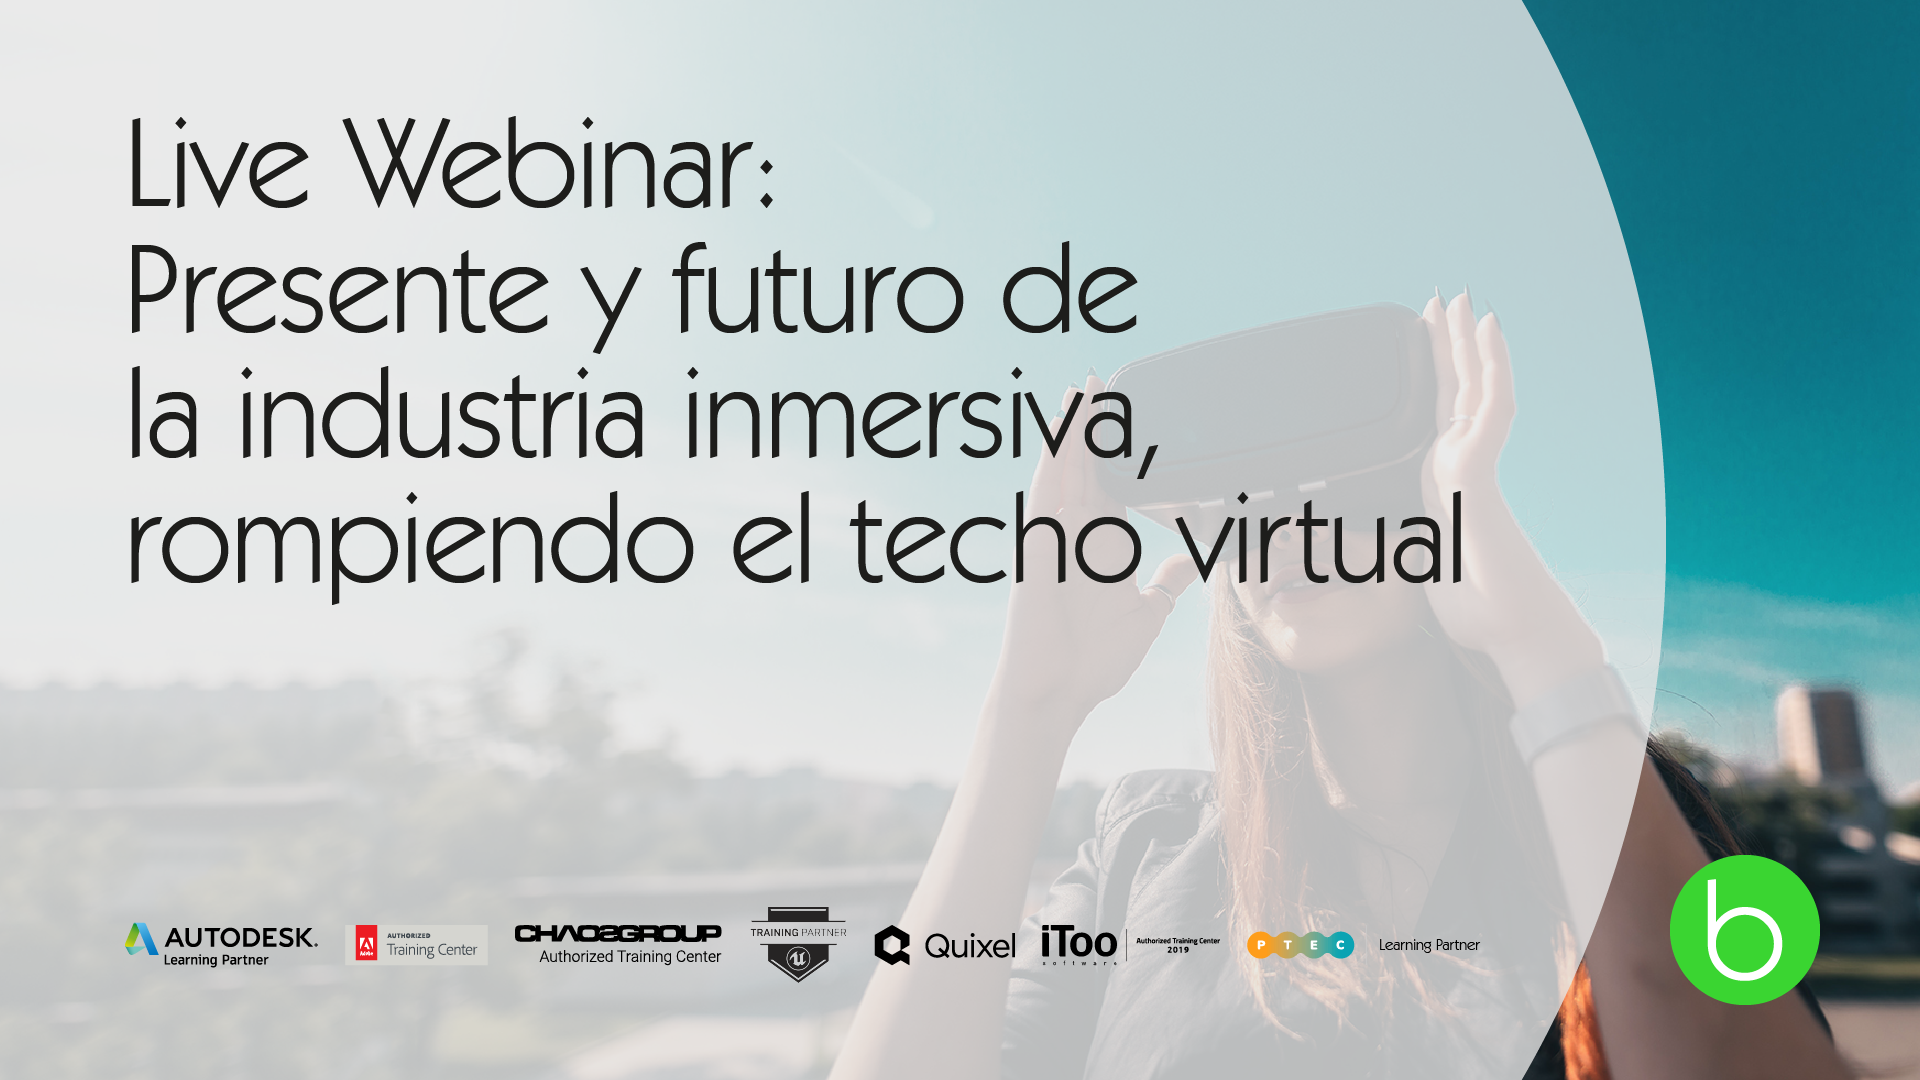 Live Webinar: Presente y futuro de la industria inmersiva, rompiendo el techo virtual butic The New School